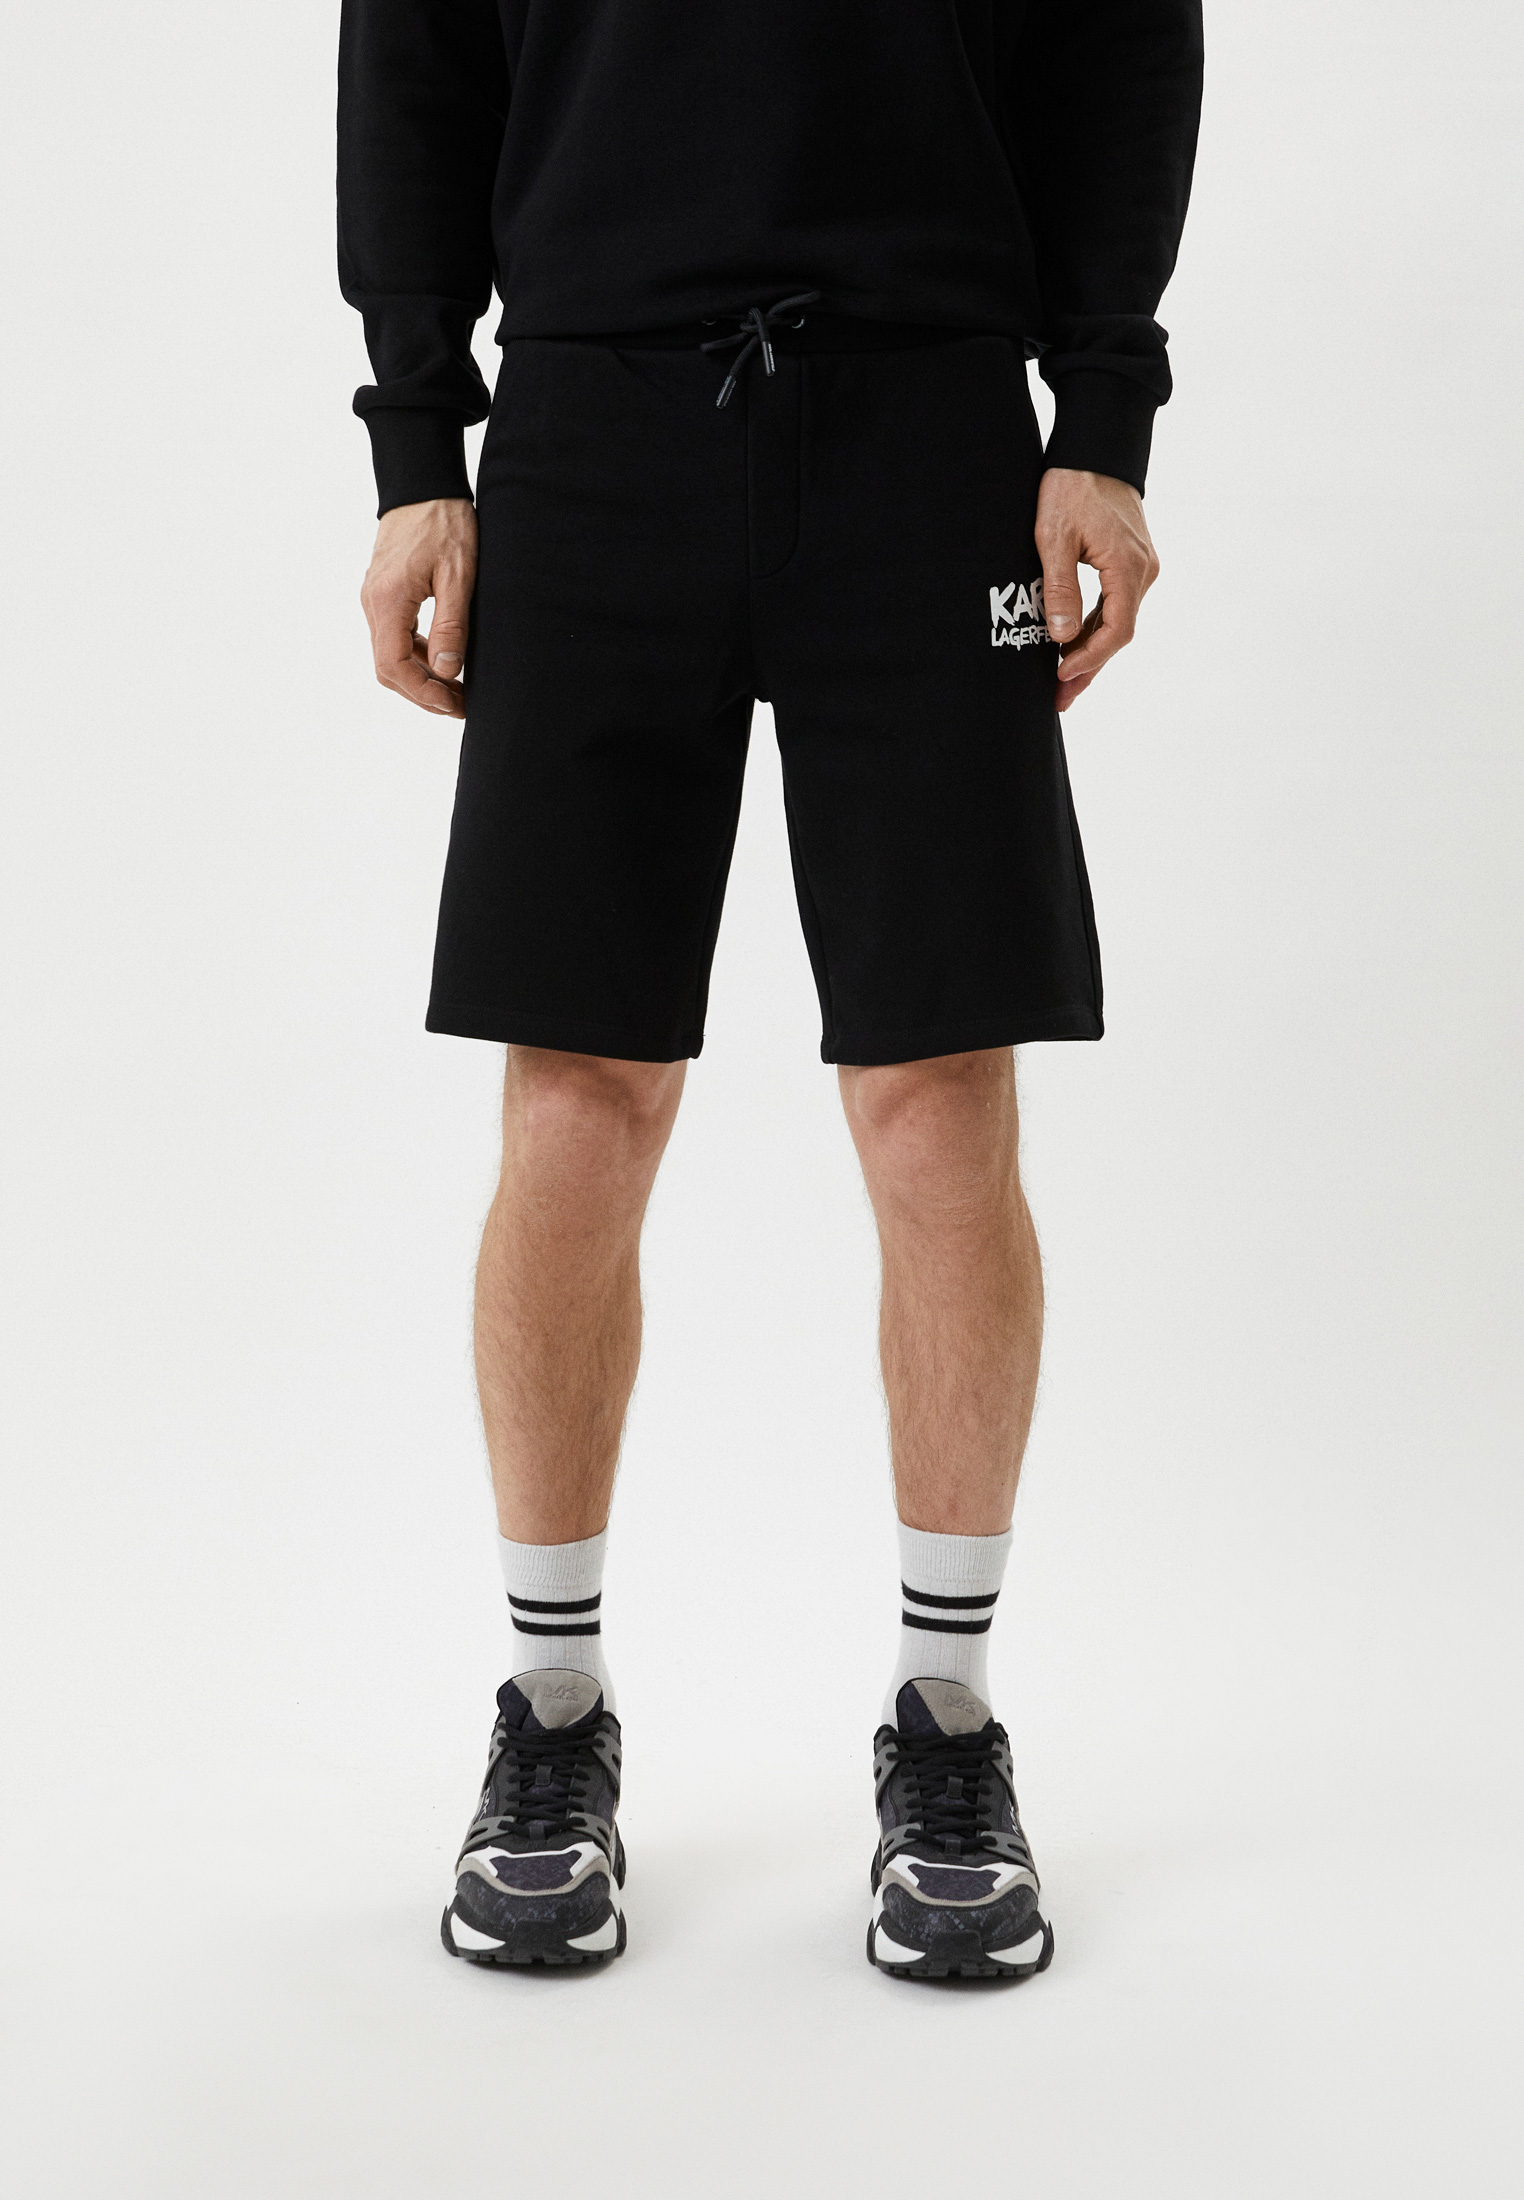 Мужские повседневные шорты Karl Lagerfeld (Карл Лагерфельд) 705094-531900: изображение 1